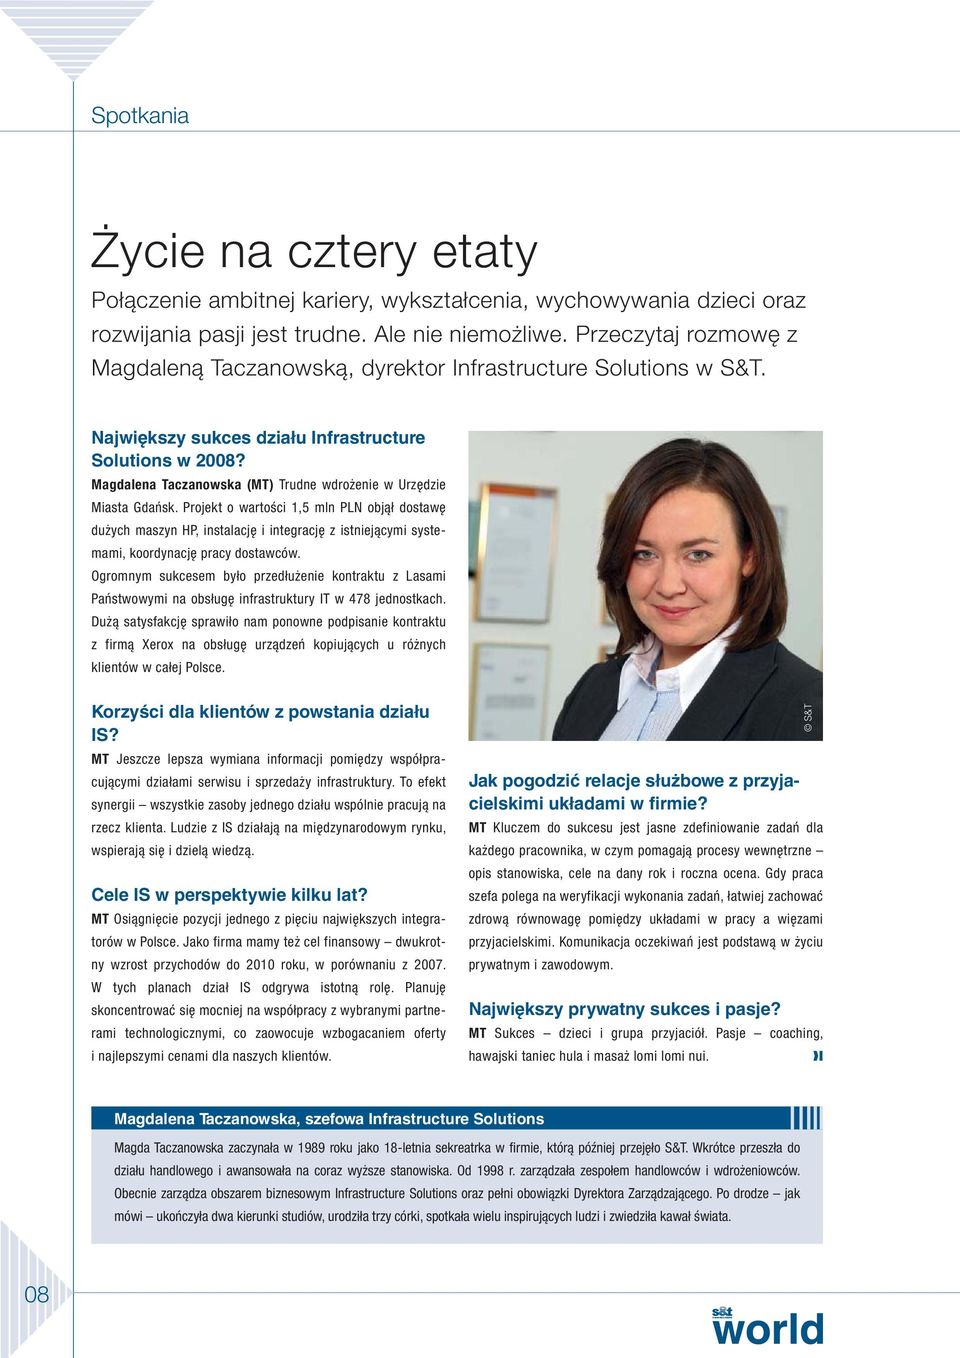 Magdalena Taczanowska (MT) Trudne wdrożenie w Urzędzie Miasta Gdańsk.